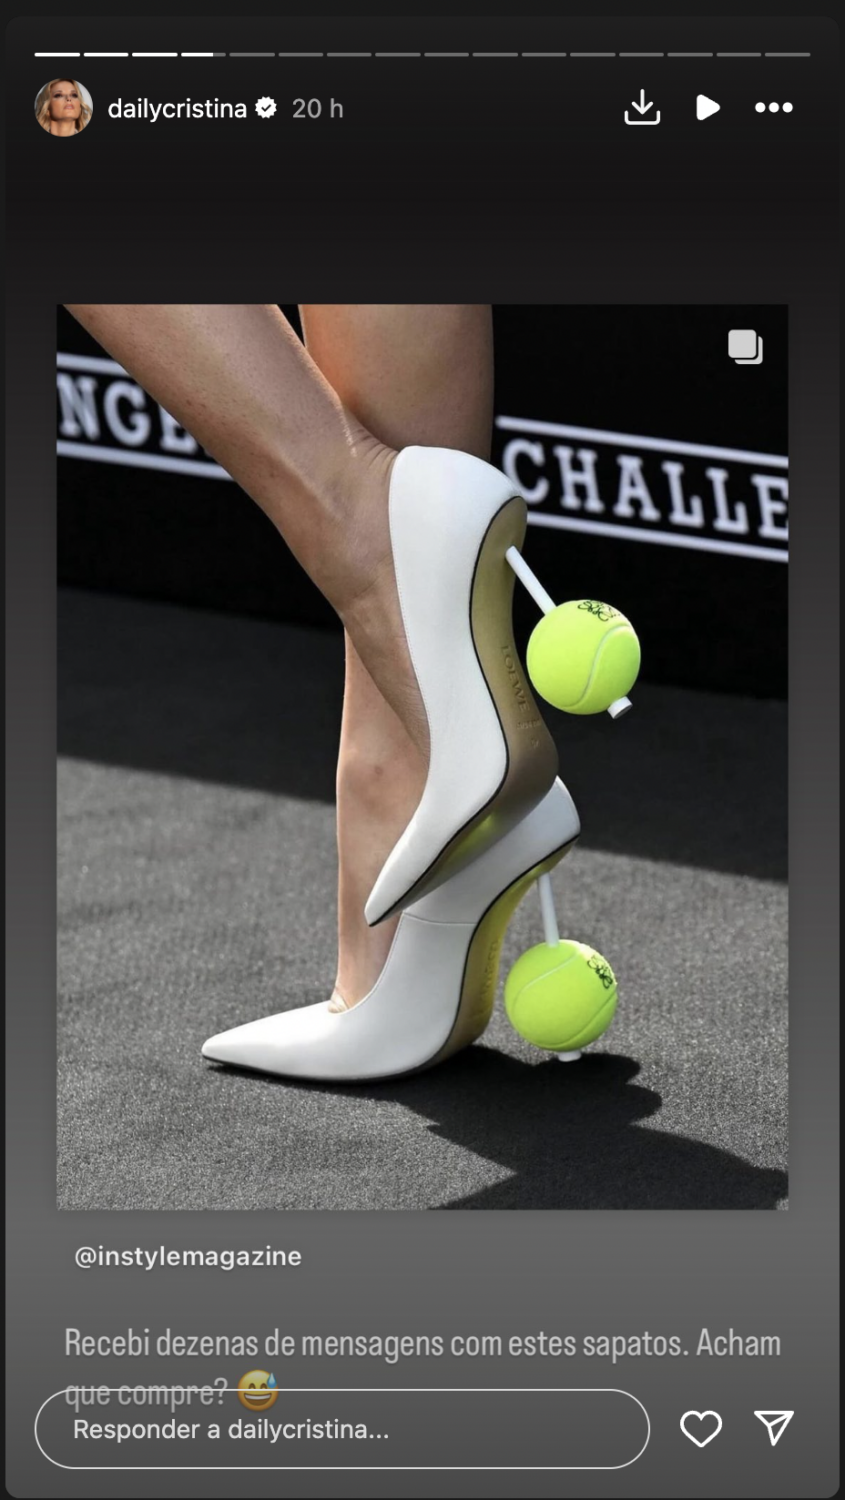 Sapatos com bolas de ténis? Cristina Ferreira recebe &#8216;dica&#8217; e brinca: &#8220;Acham que compre?&#8221;